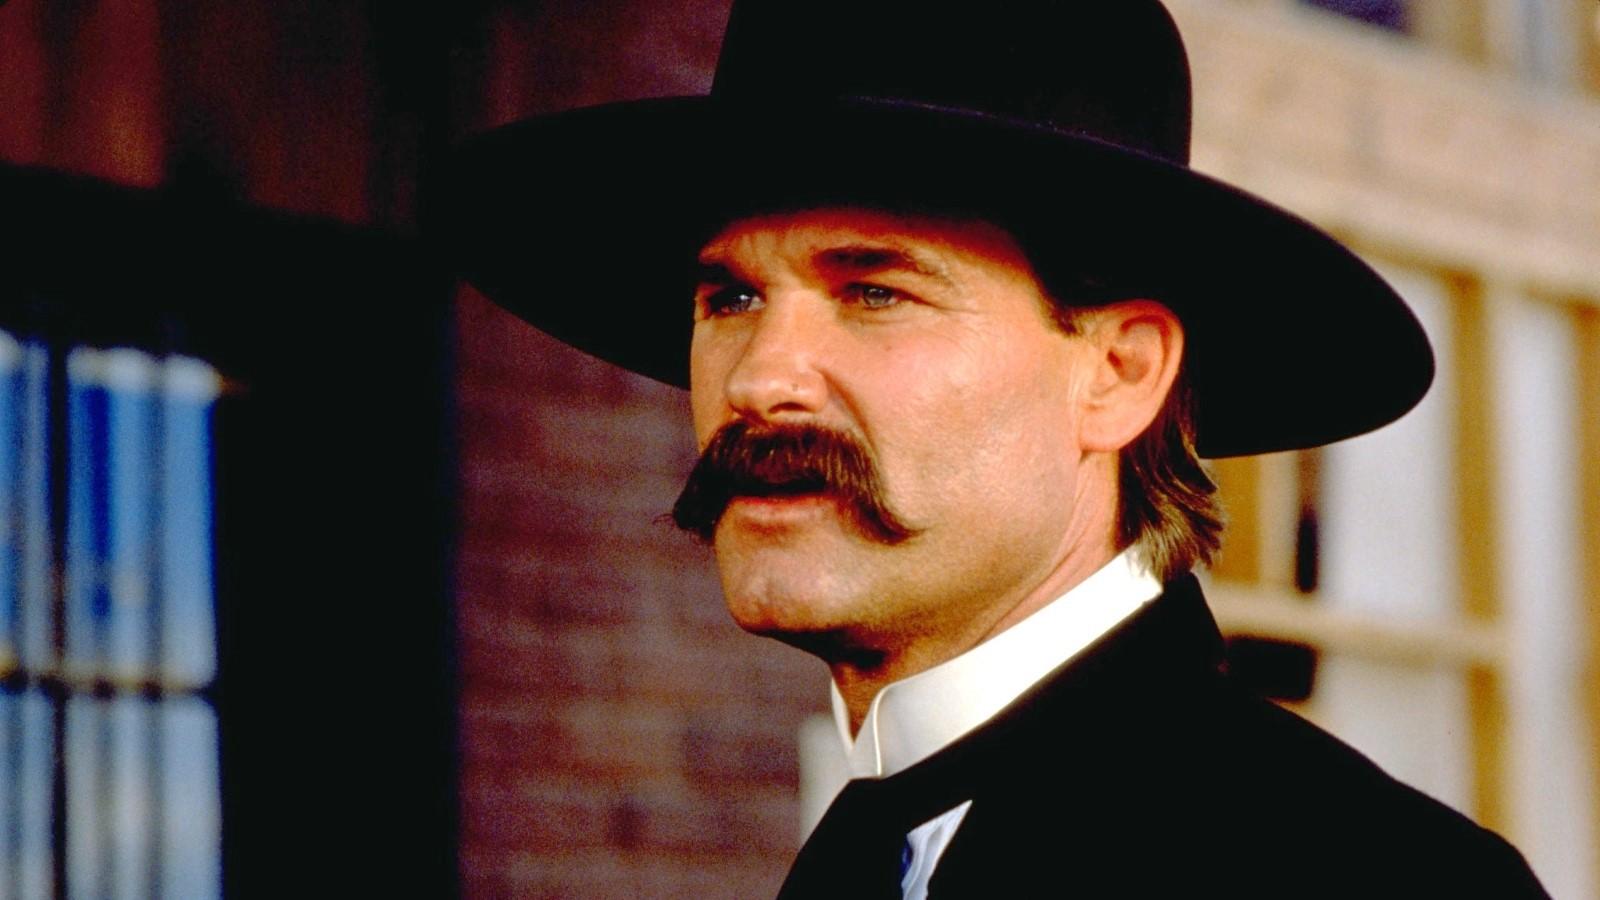 Kurt Russell as Wyatt Earp in Tombstone